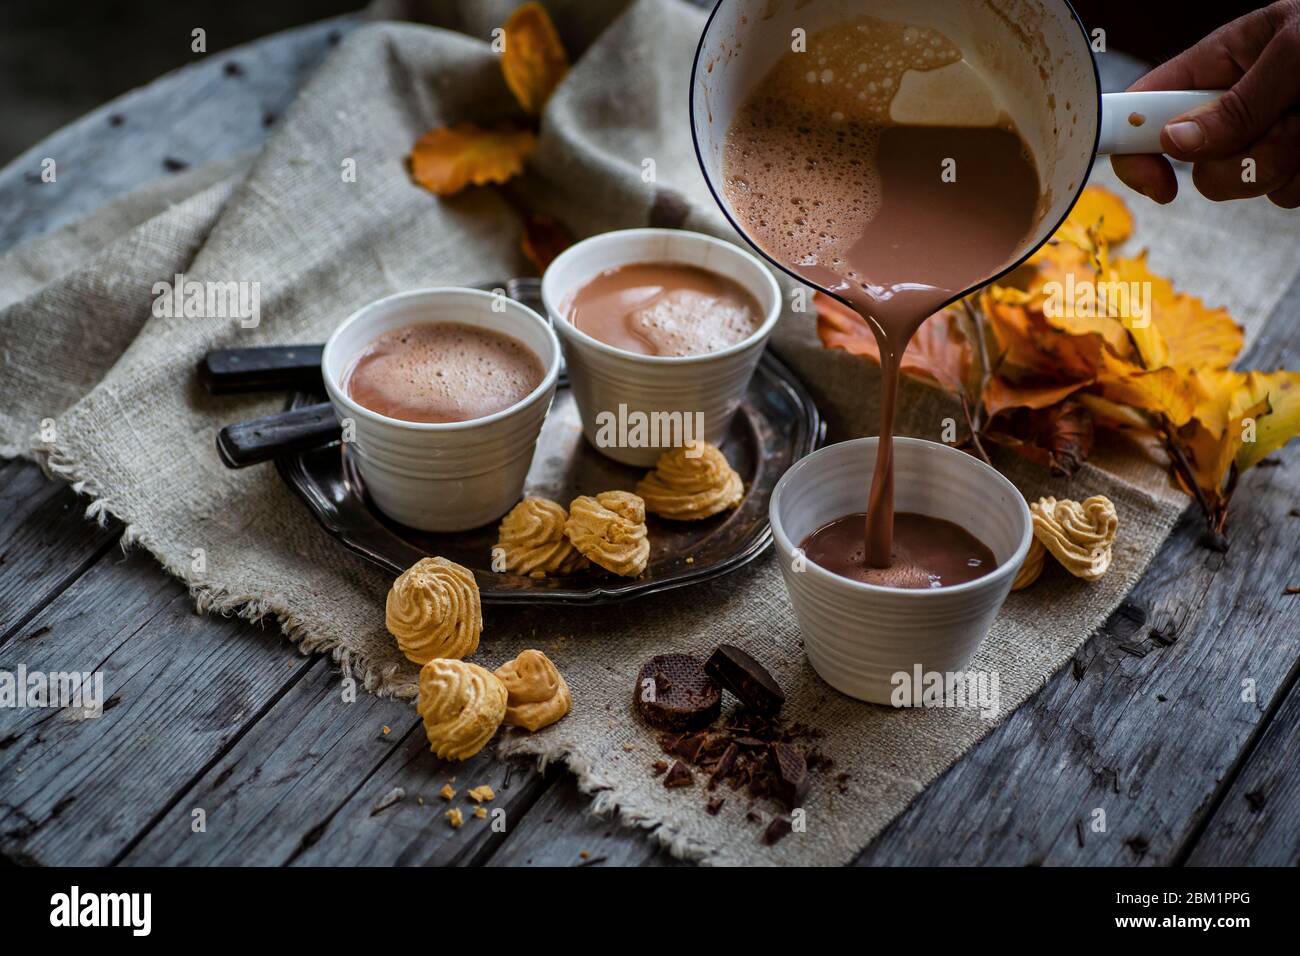 El chocolate caliente se está vertiendo de la sartén a una taza. Sabroso arreglo con tazas y chocolate caliente y colores de otoño. Foto de stock